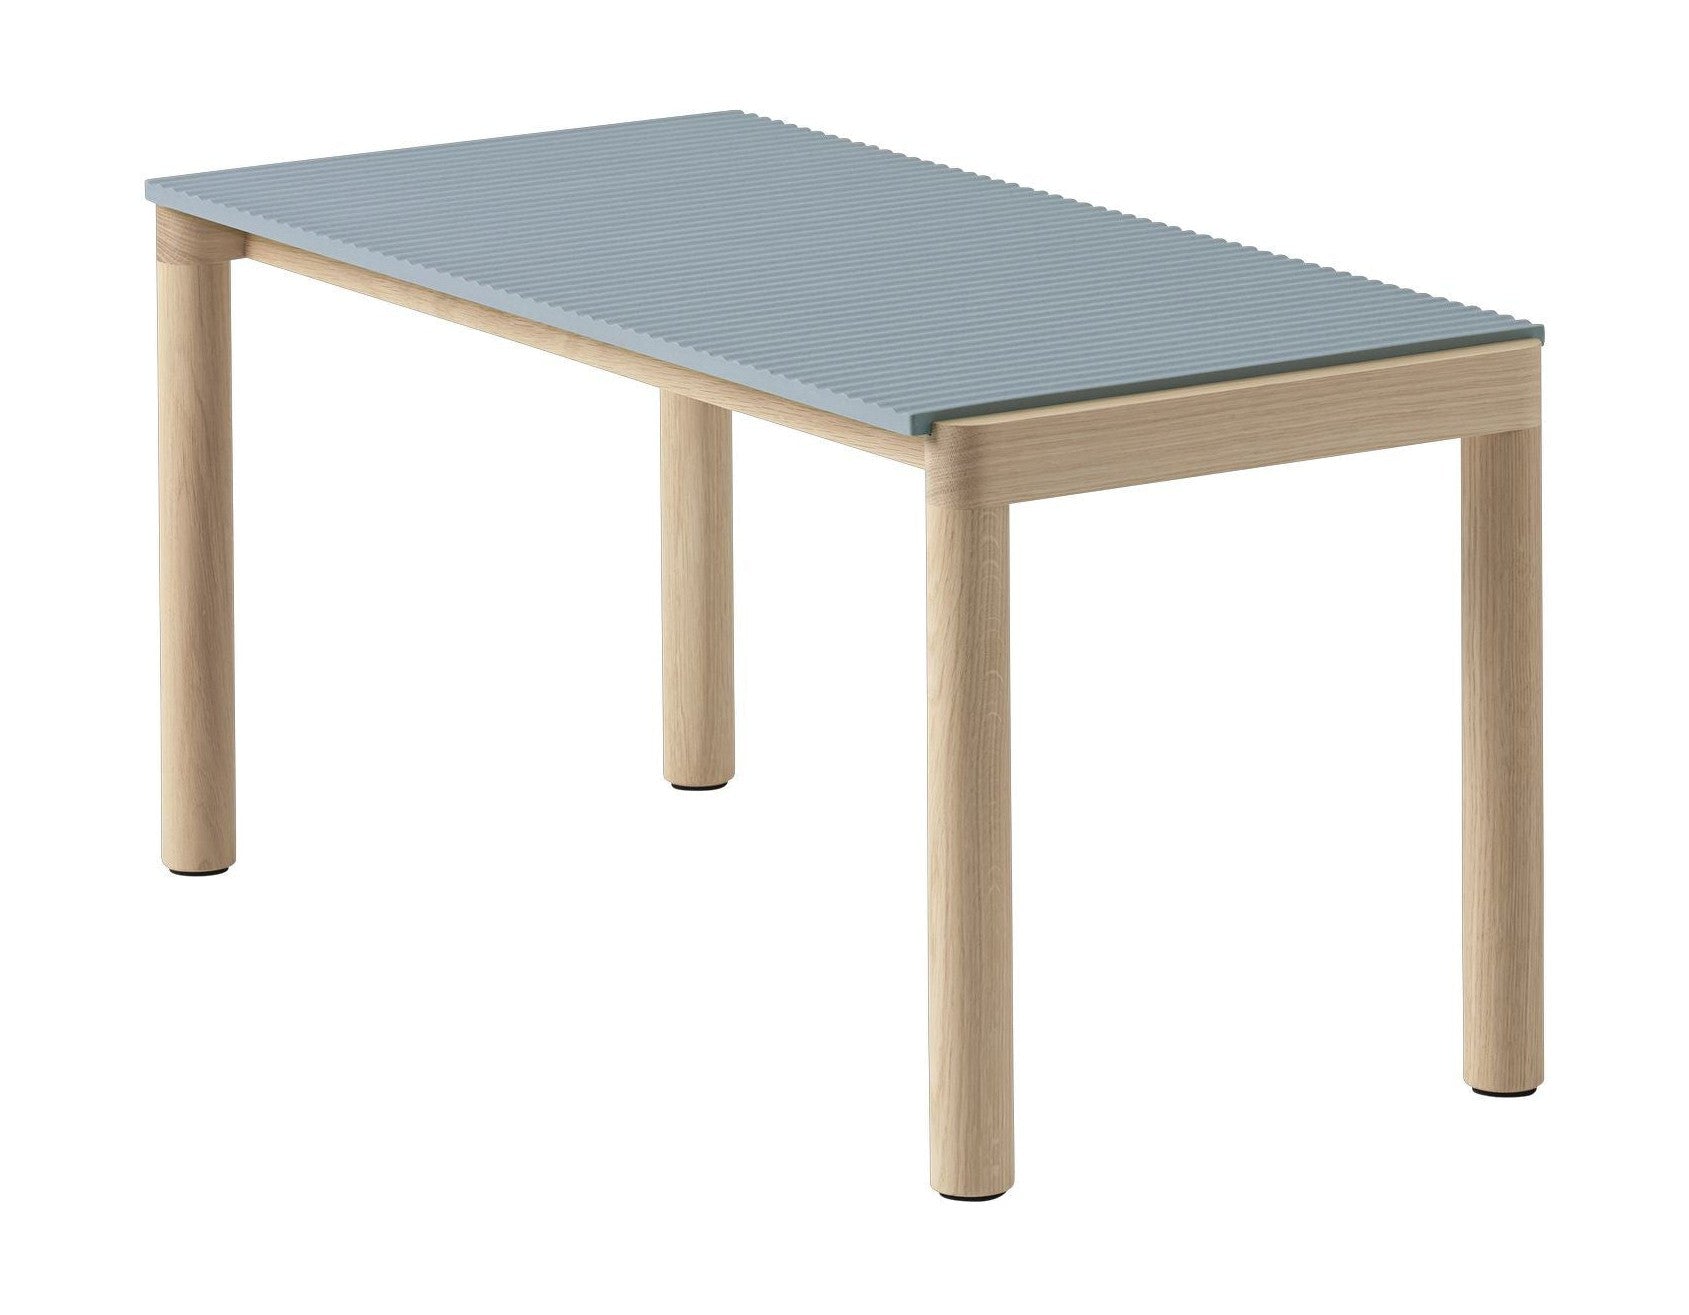 Muuto para stolika kawy 1 Faluje jasnoniebieski/dębowy, 40 x 84 x 40 cm